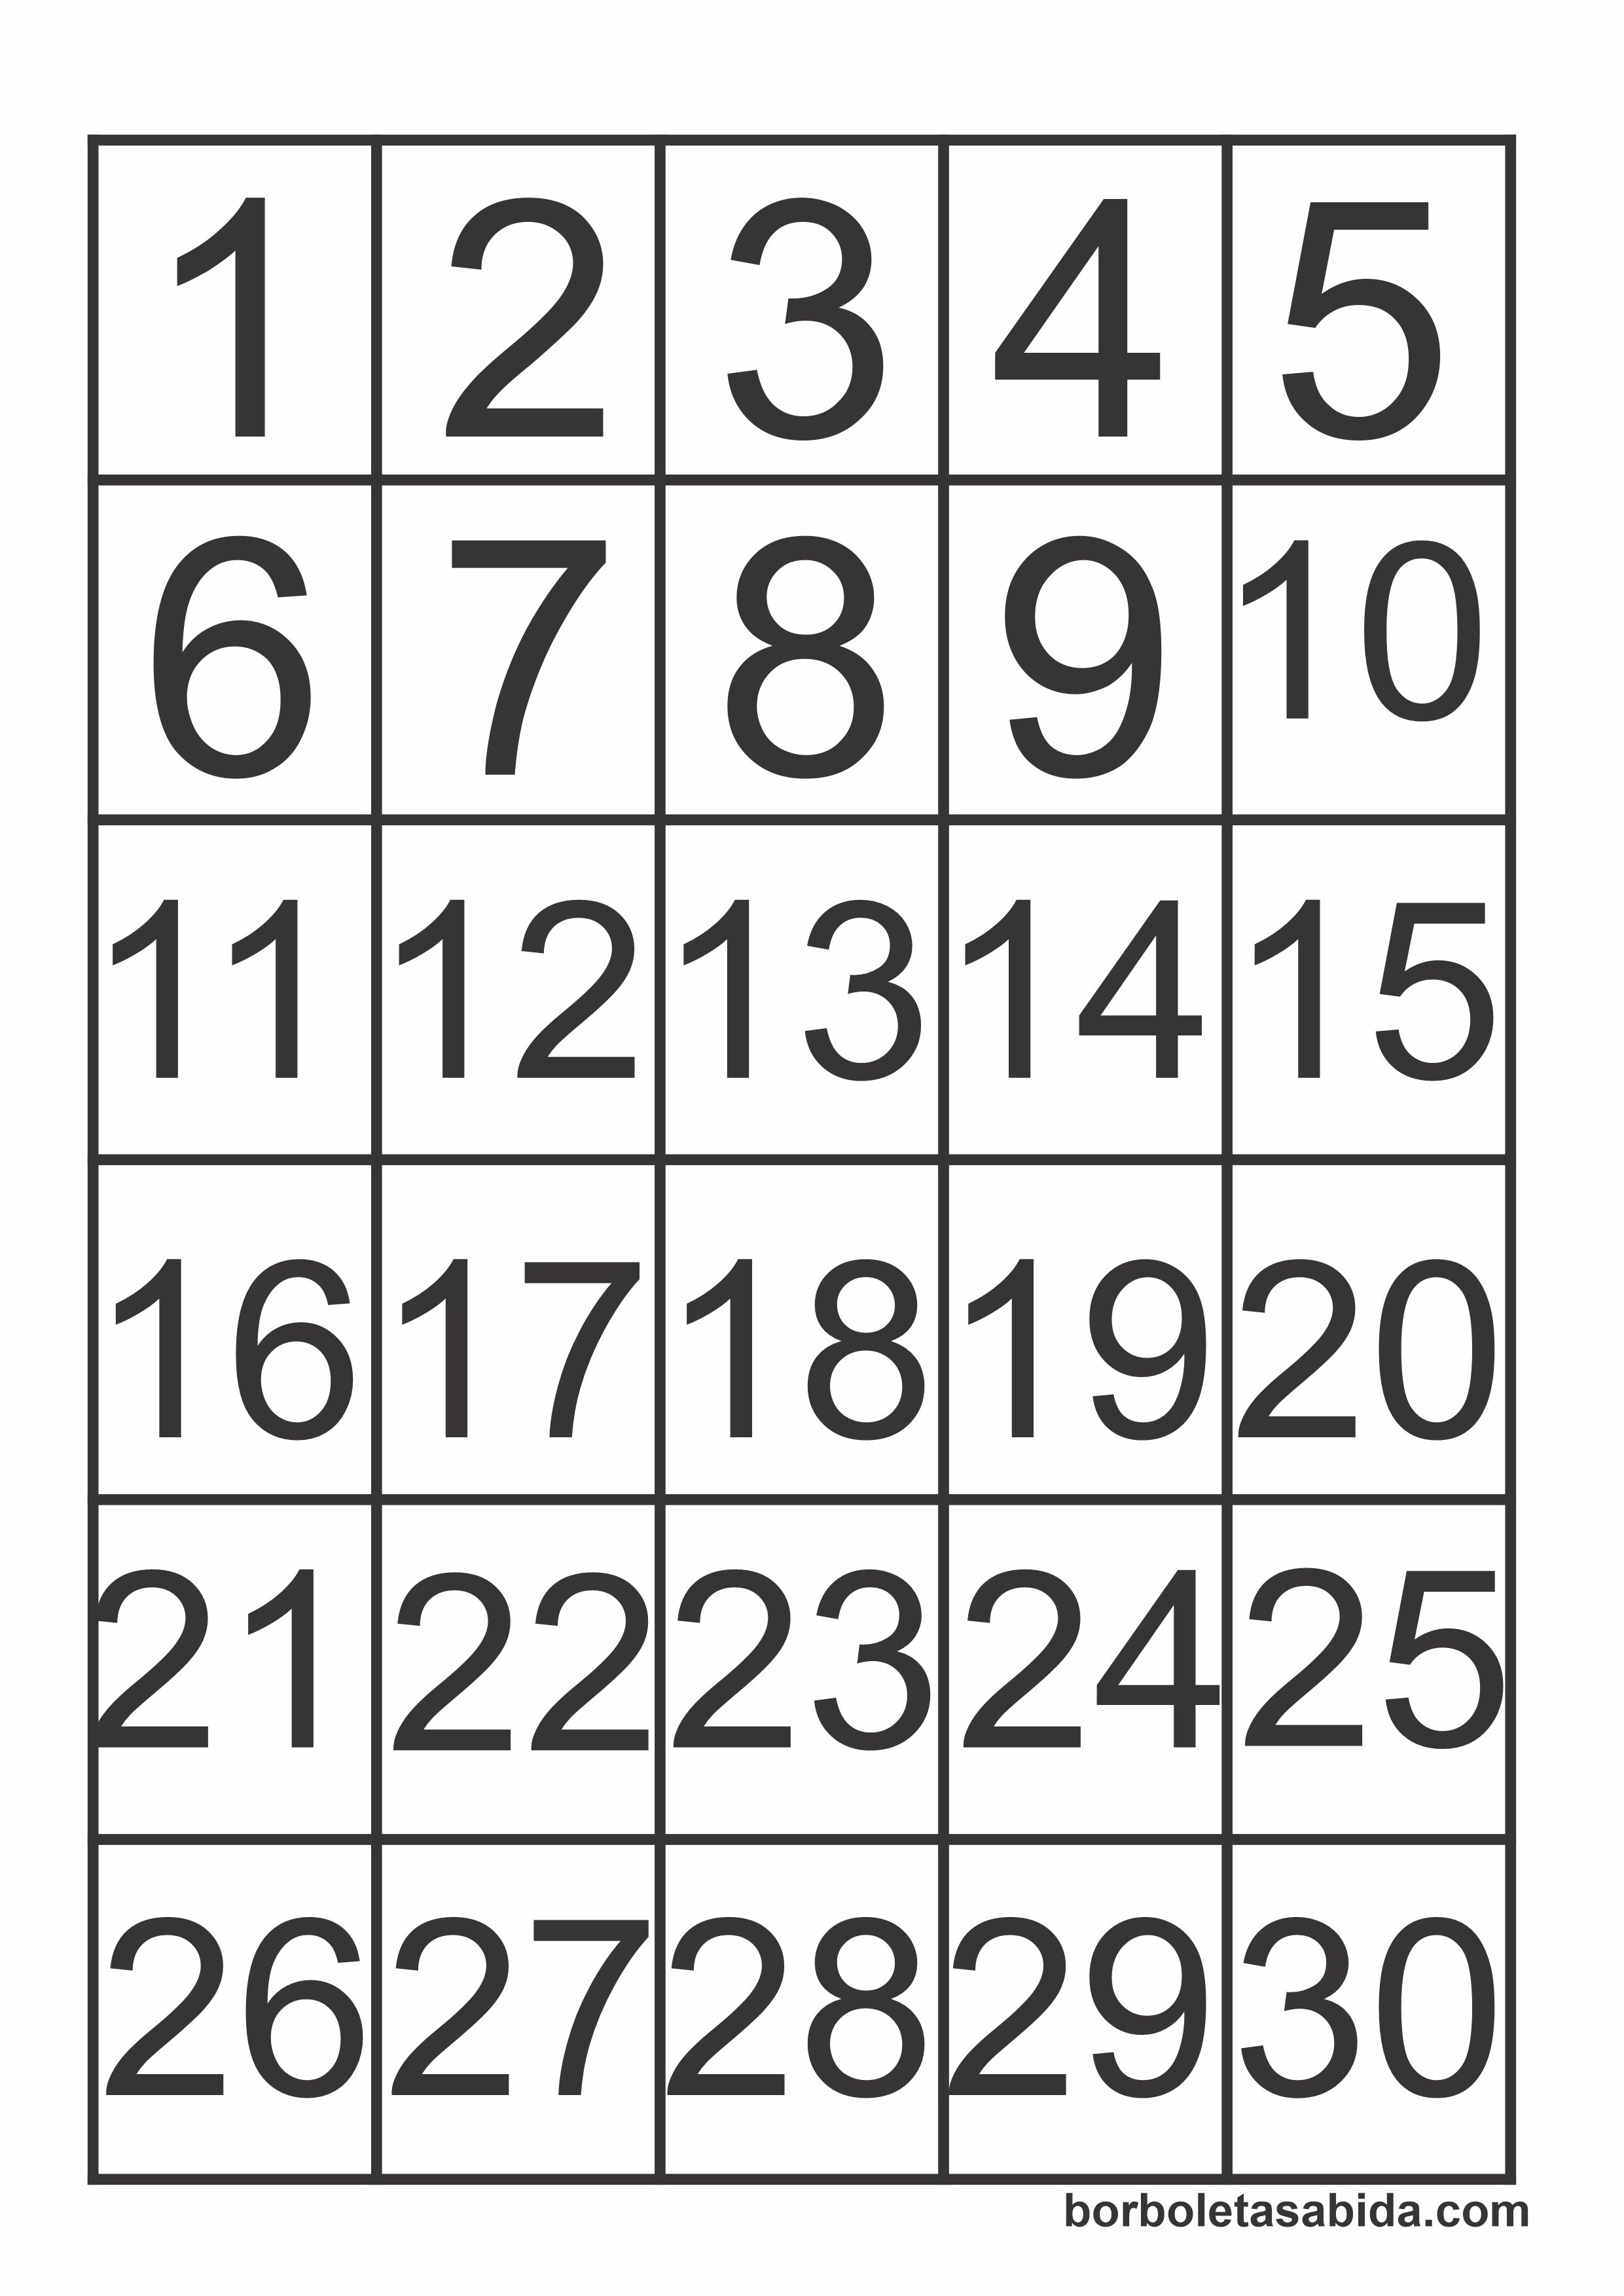 Bingo de números